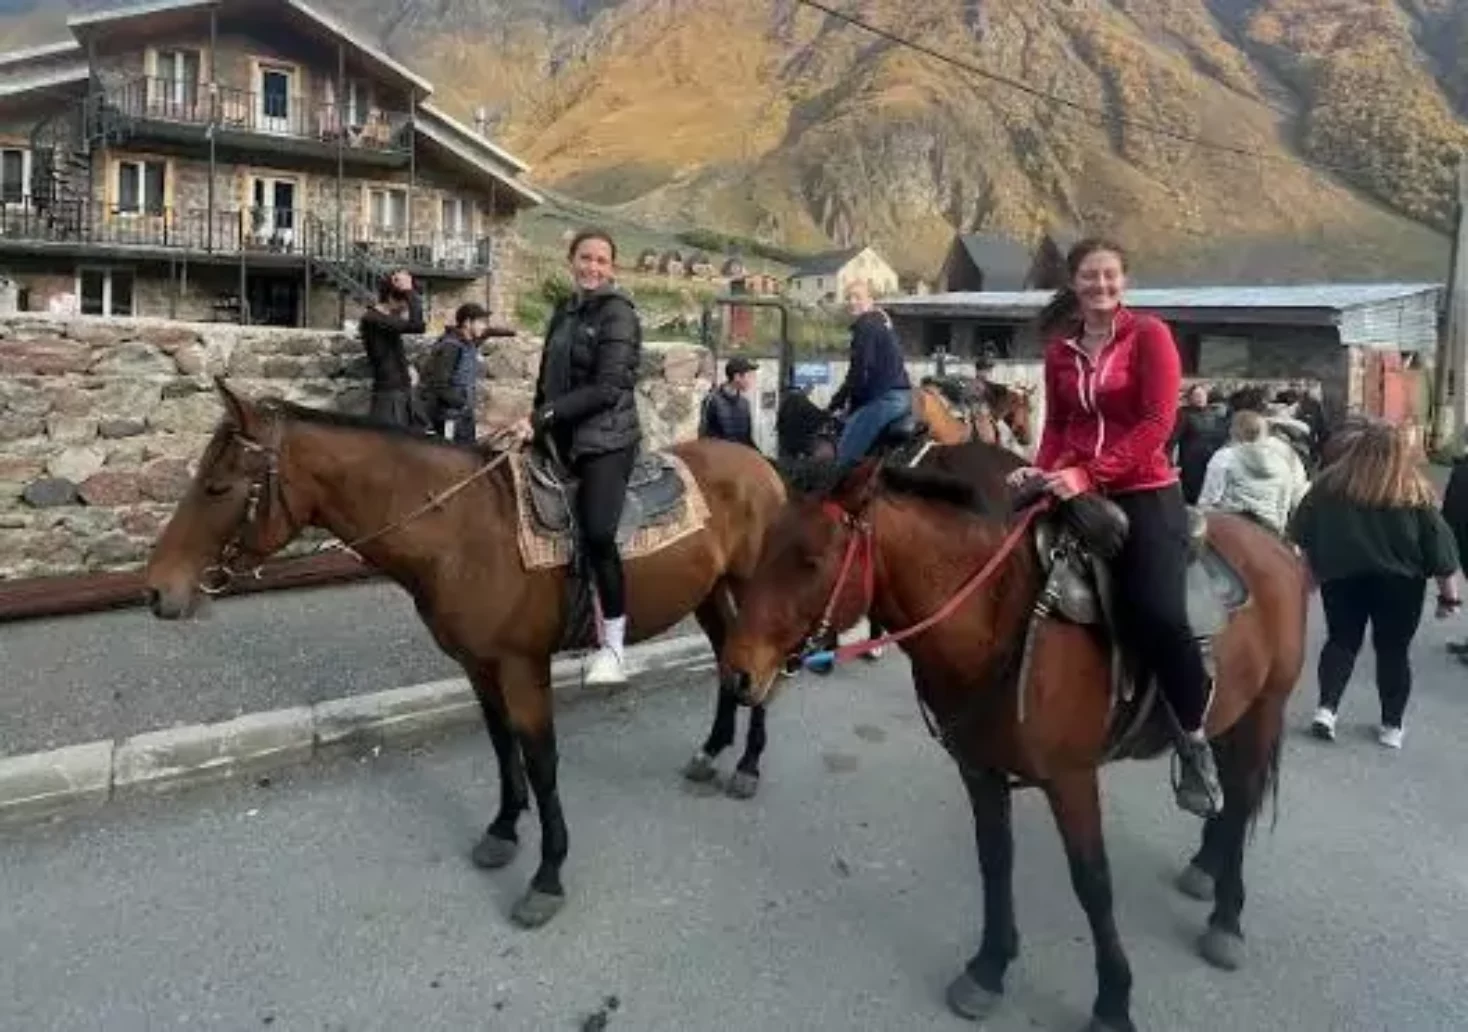 Foto in Beitrag von 5min.at: Zu sehen sind mehrere KTS-SChülerinnen auf Pferden.